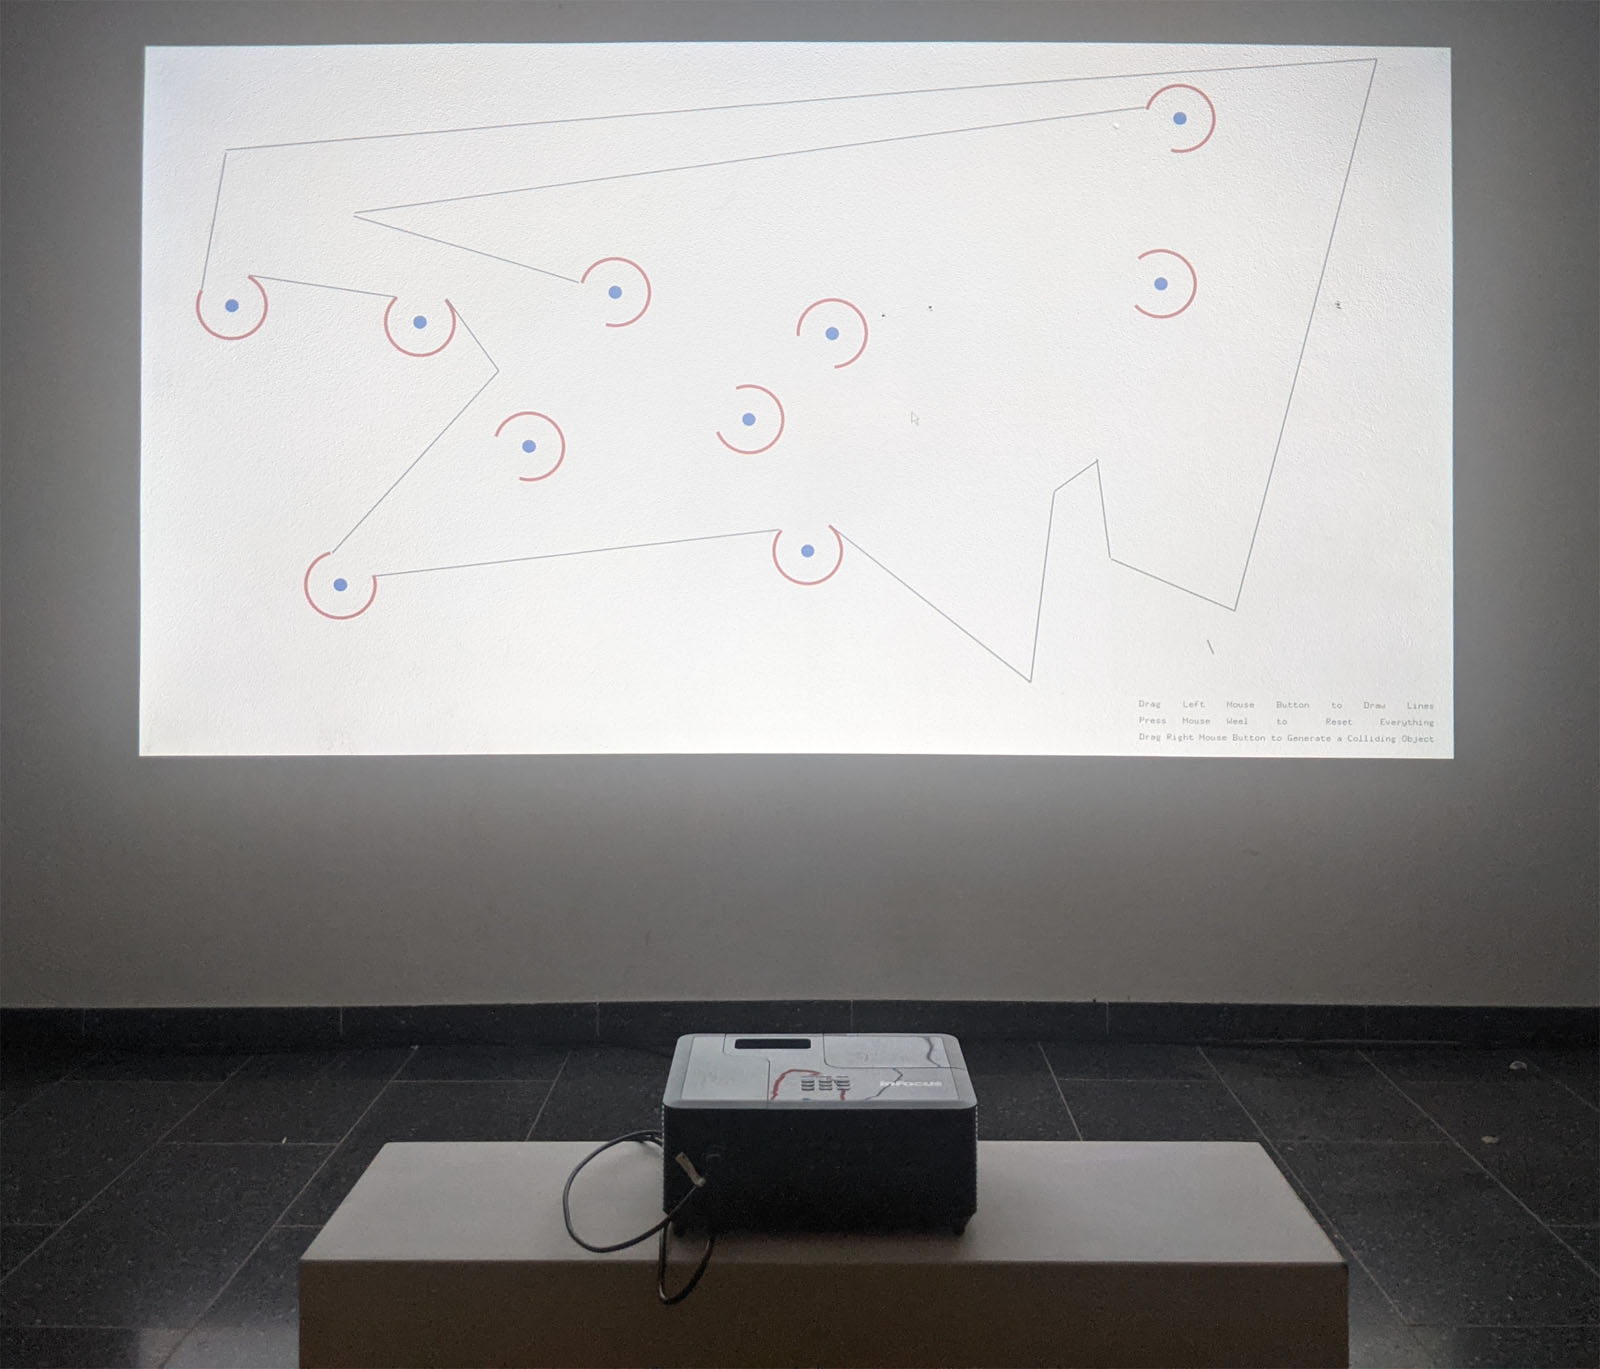 Lange Nacht der Museen Stuttgart - Data_to_light_Colliding_Objects